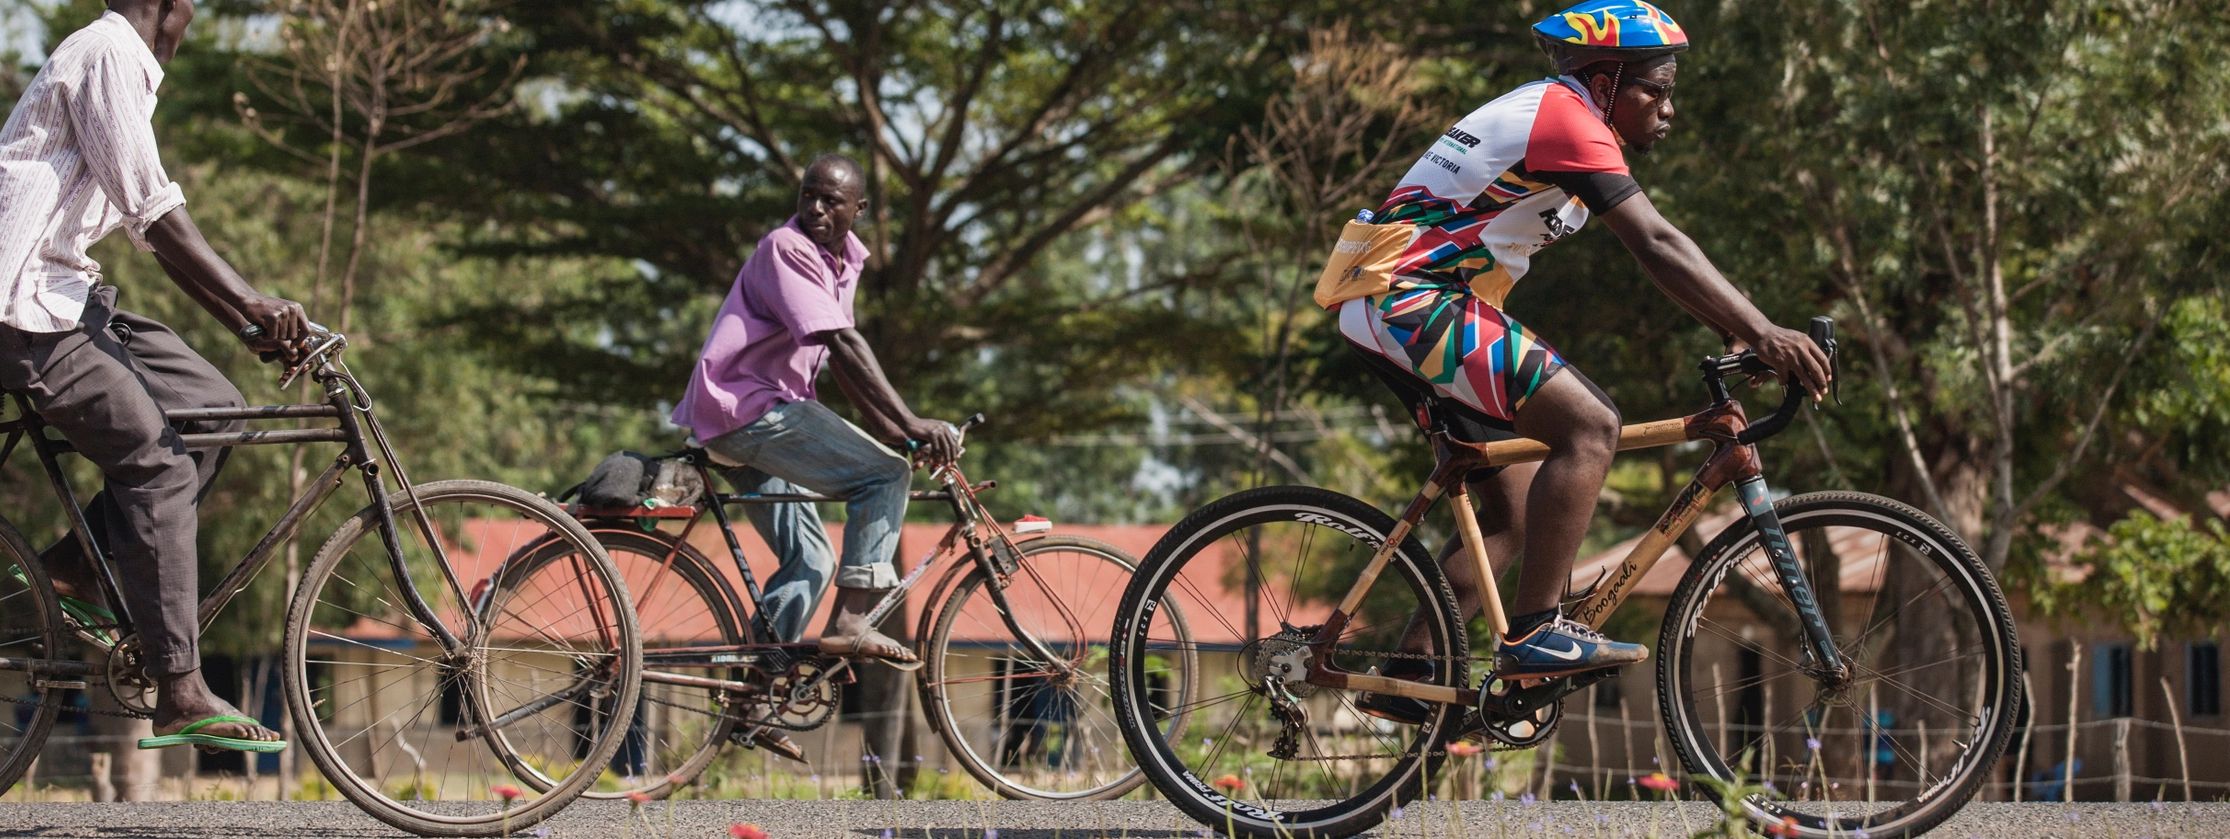 Bikes For Sale In Uganda